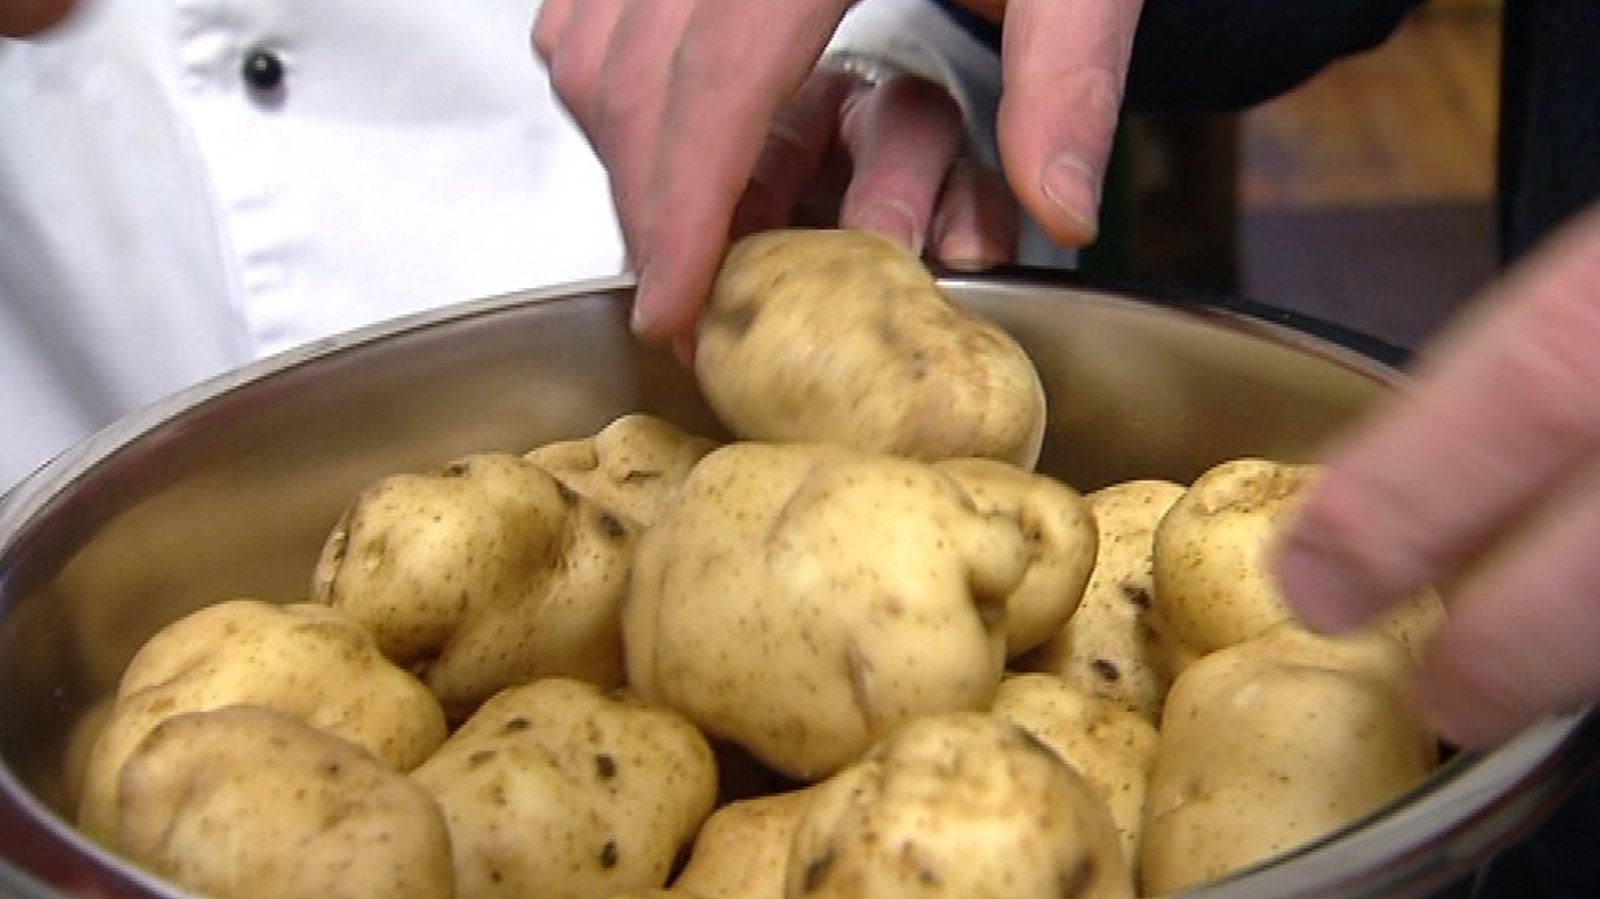 Image - The Lumper potato, a staple of pre-Famine Ireland